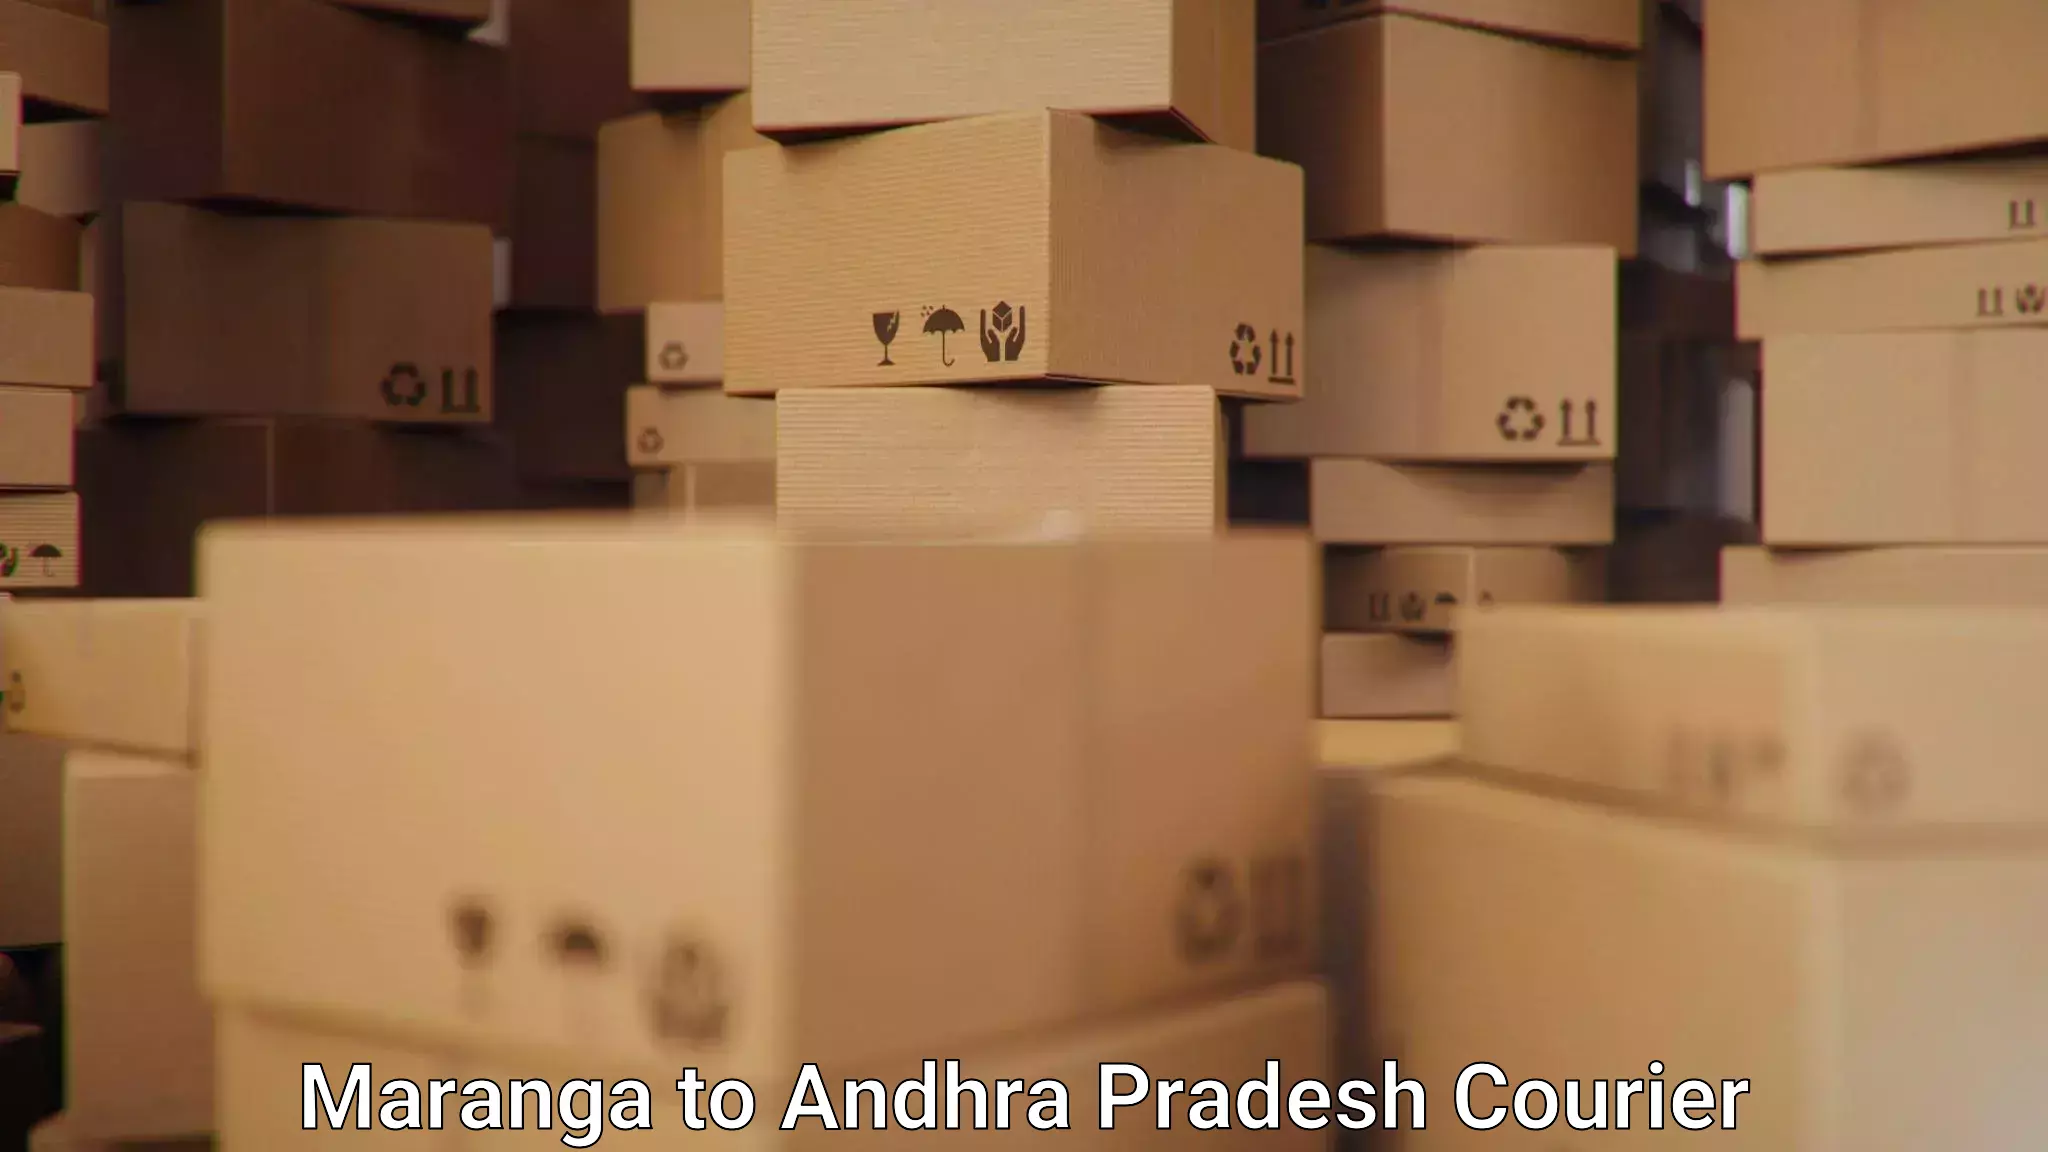 Urgent courier needs Maranga to Gopalapatnam